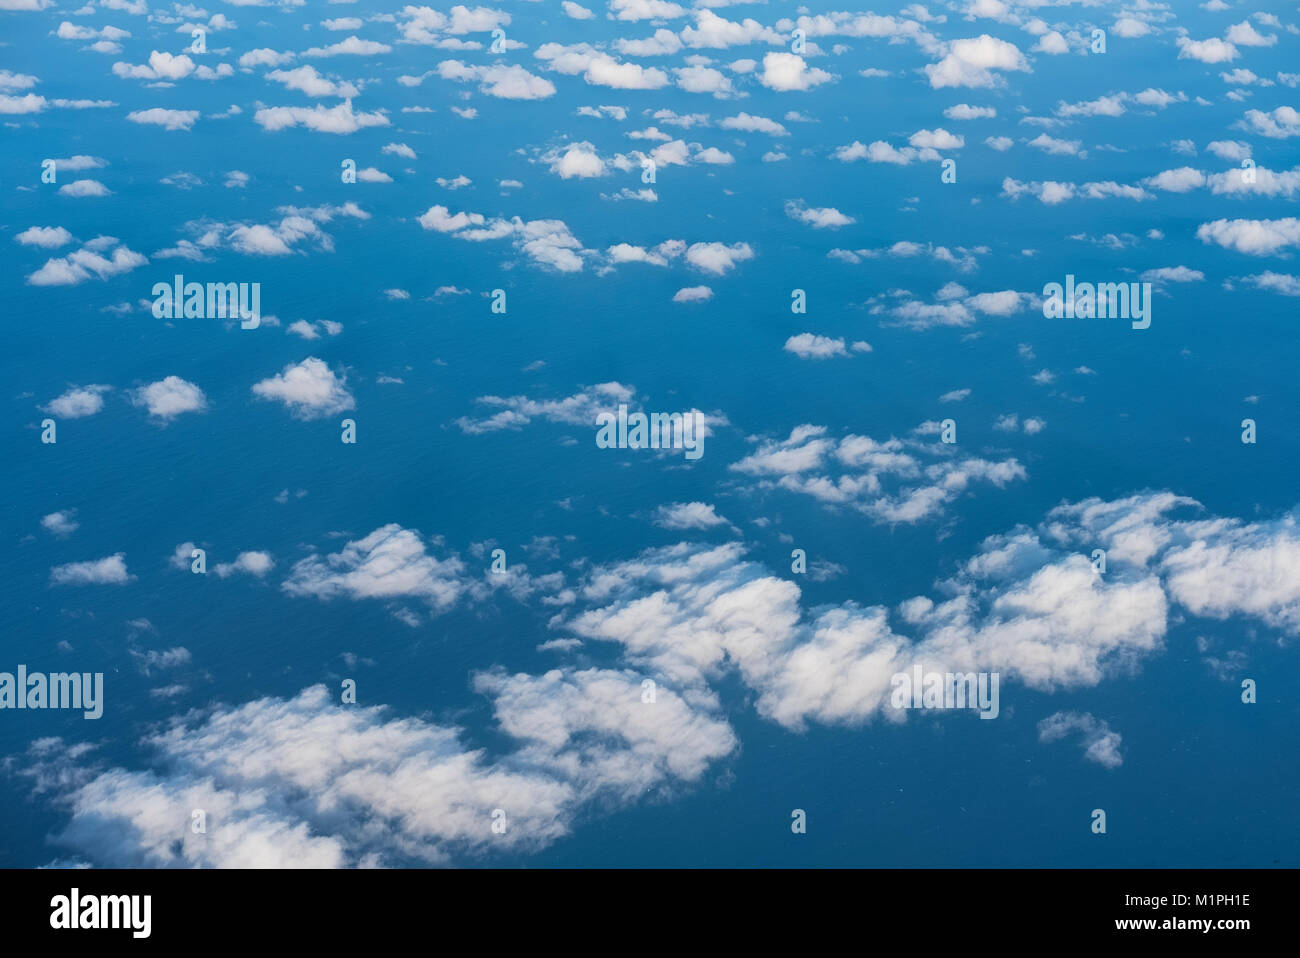 Mit Blick auf das blaue Meer mit weißen Wolken verstreut Stockfoto